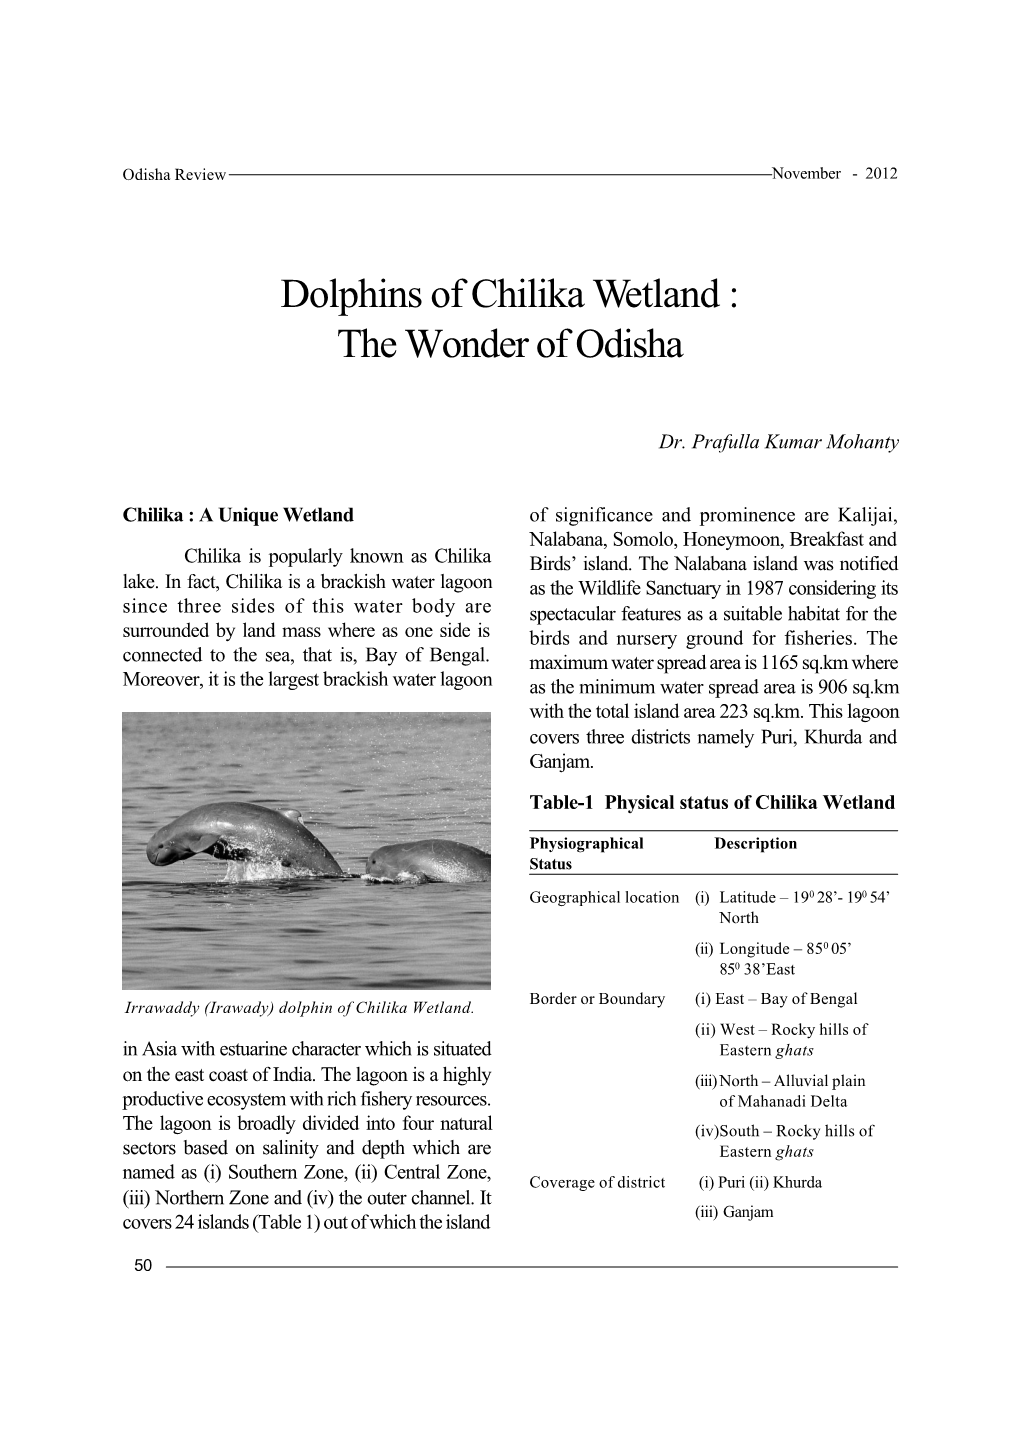 Dolphins of Chilika Wetland : the Wonder of Odisha